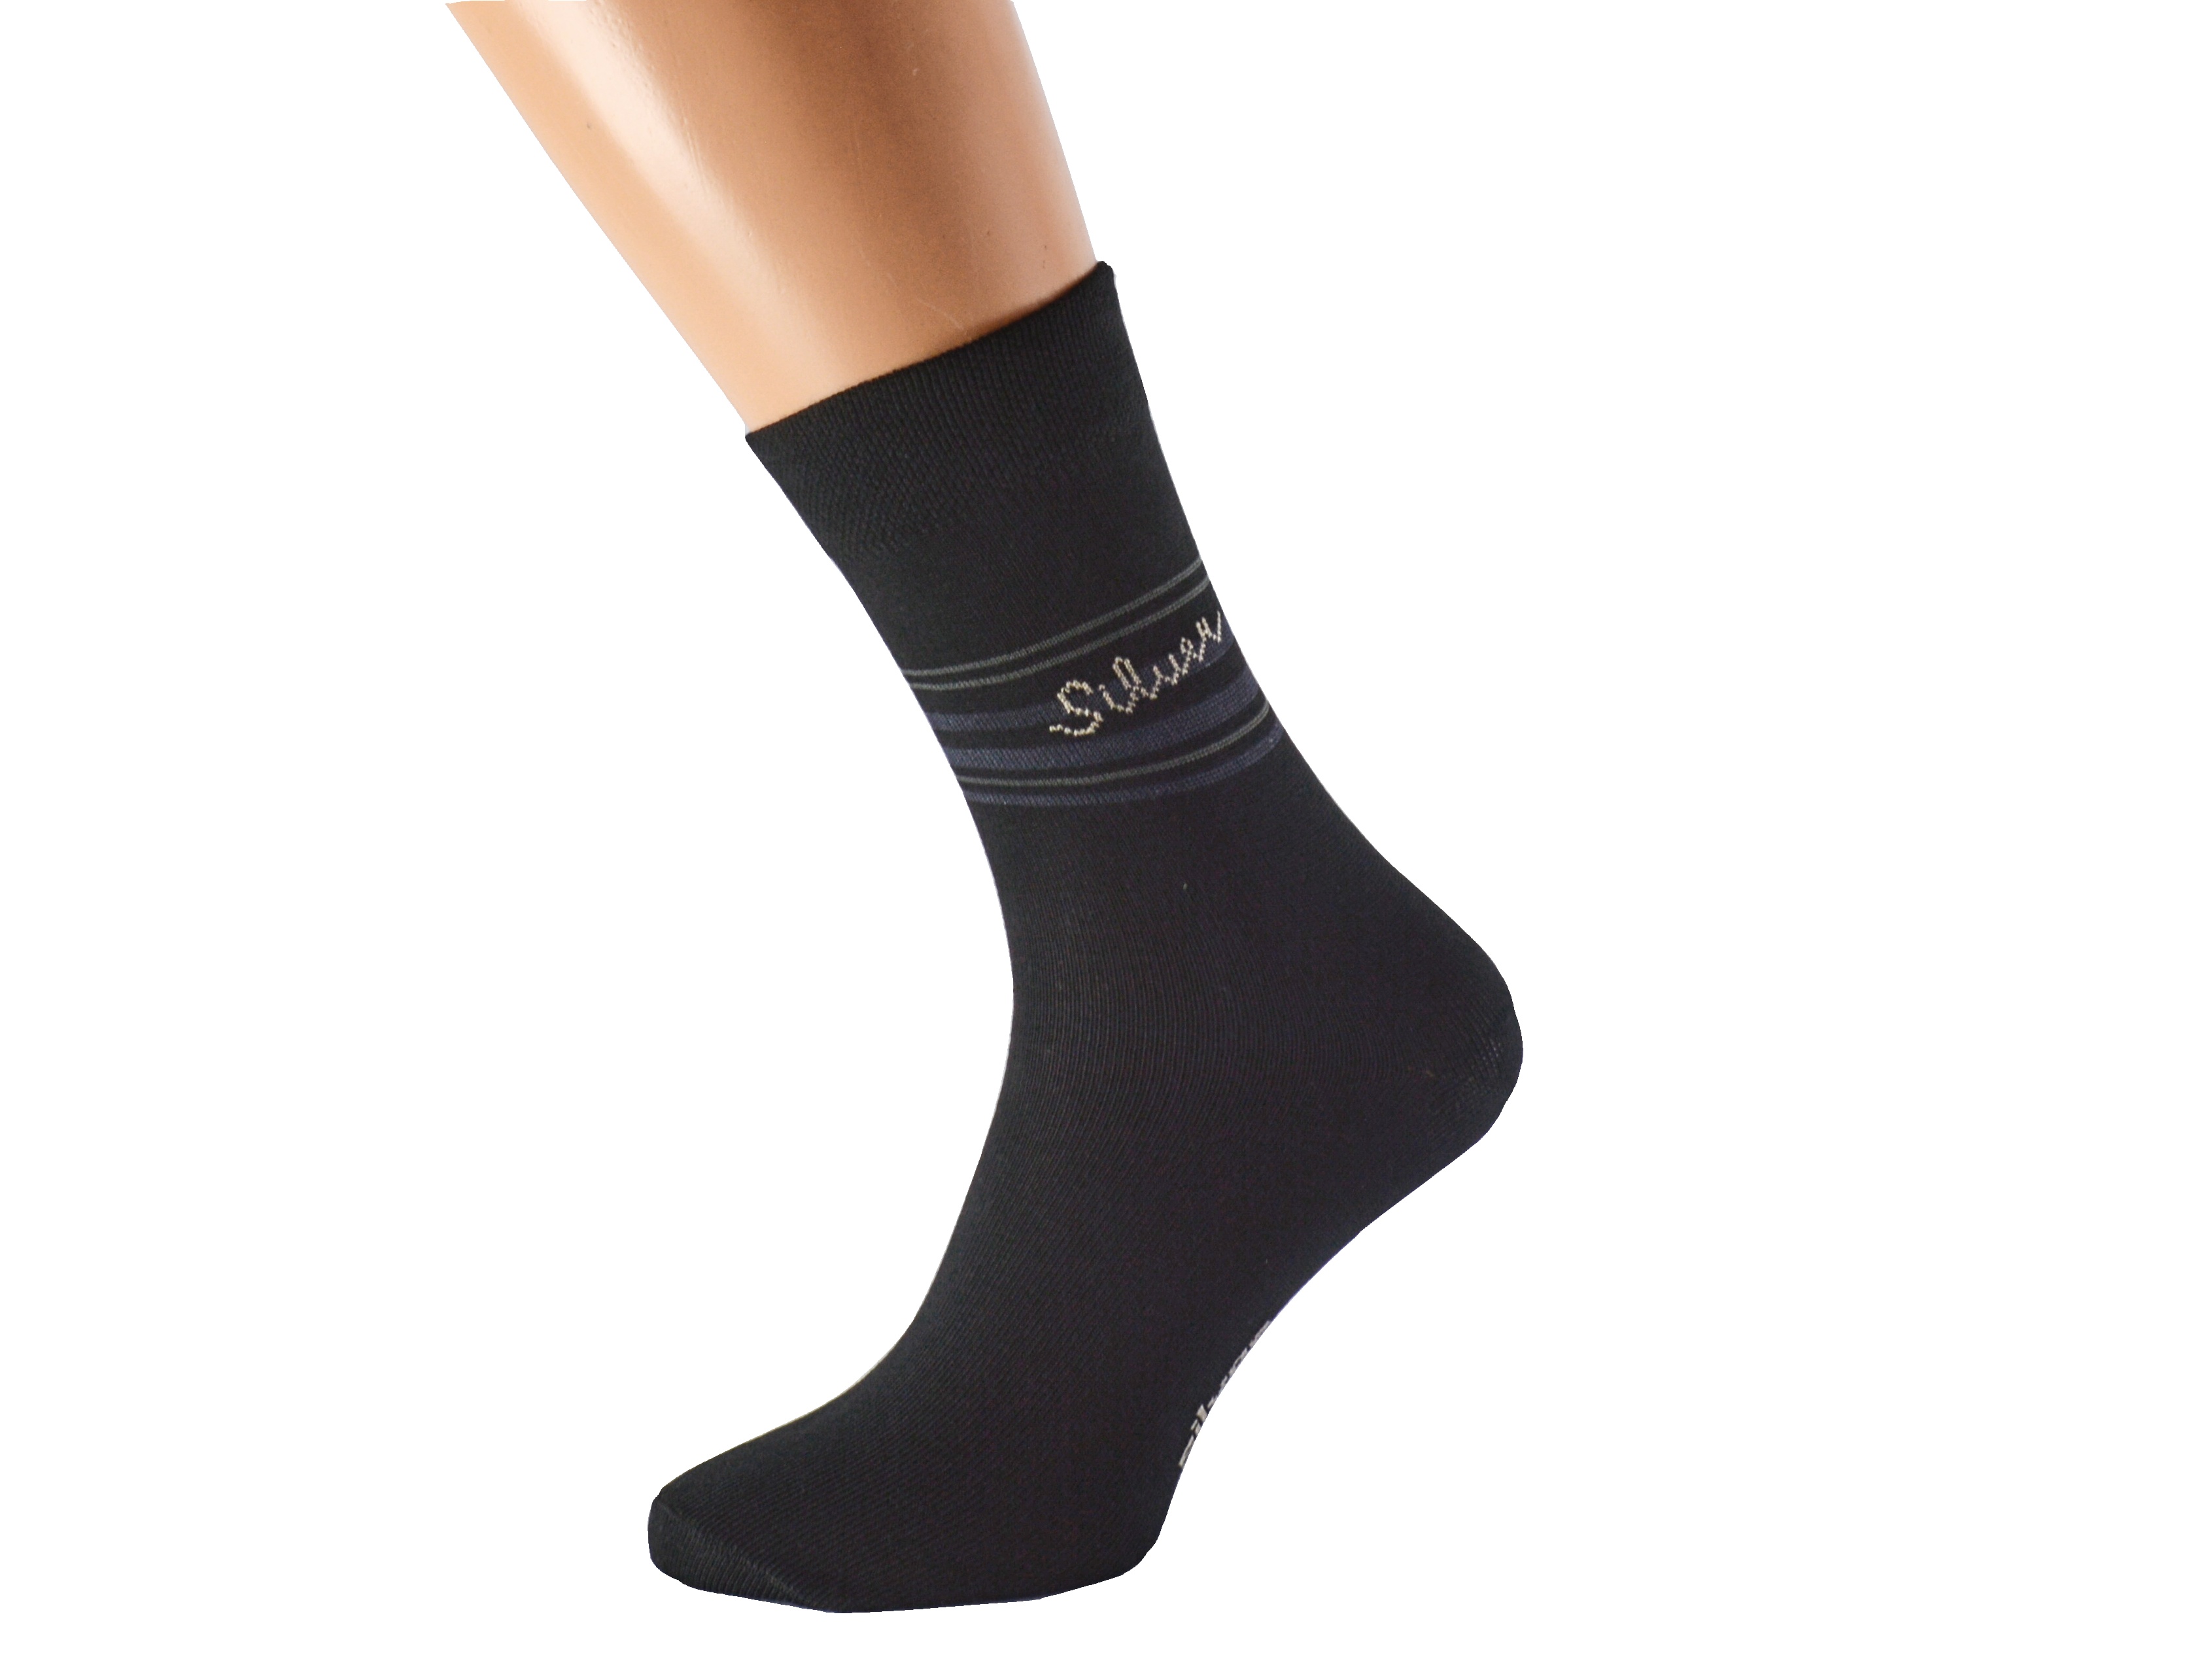 Antibakteriální ponožky proti pocení SILVER KUKS Barva: Černé, Velikost: EUR 36-38 (UK 4-5)